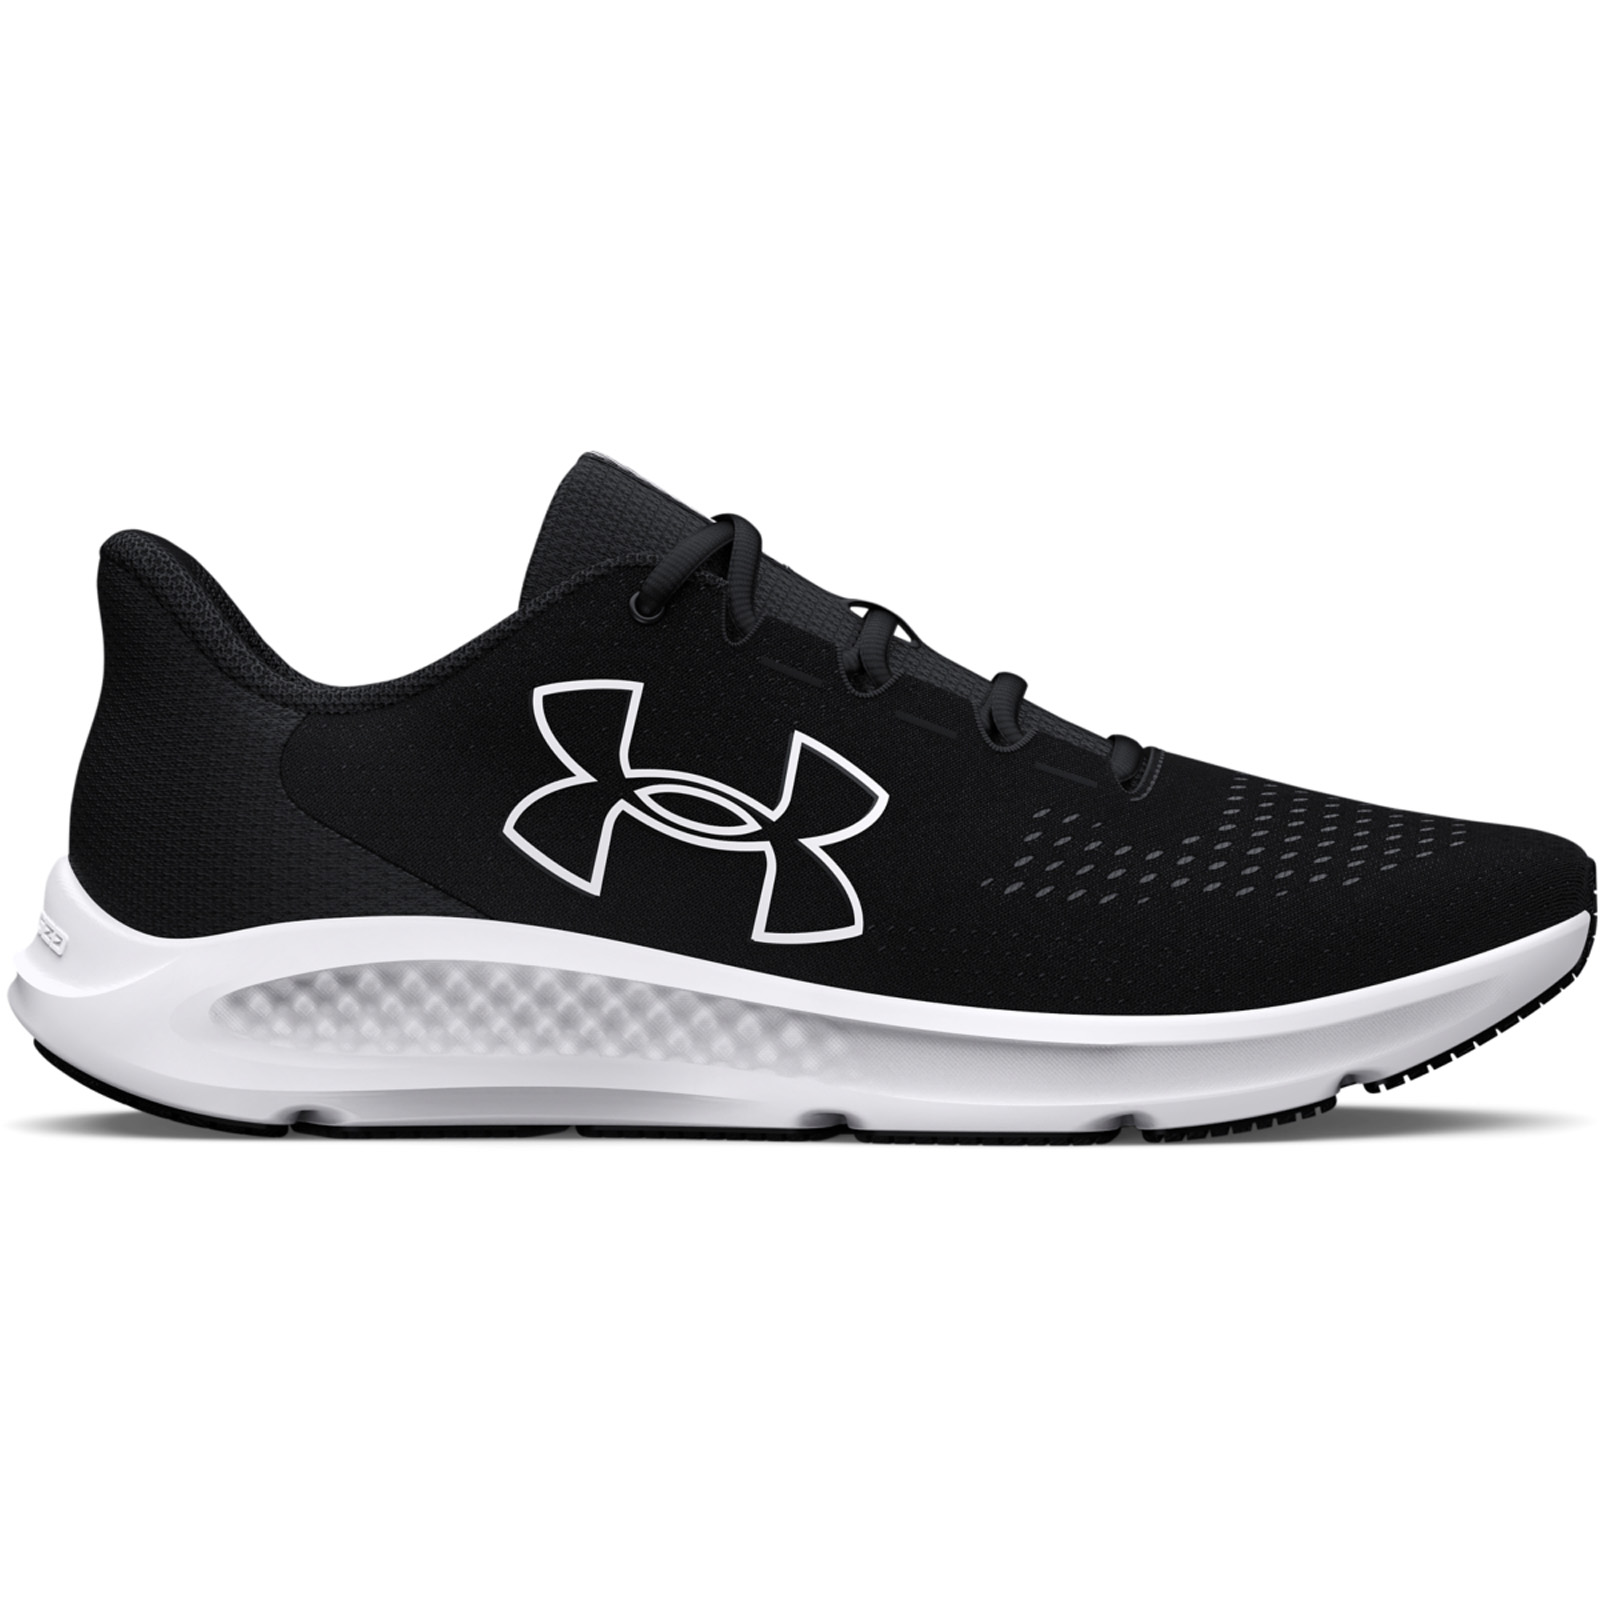 Ανδρικά > Παπούτσια > Αθλητικά > Παπούτσι Low Cut Under Armour - Men's UA Charged Pursuit 3 Big Logo Running Shoes - Black/Black/White